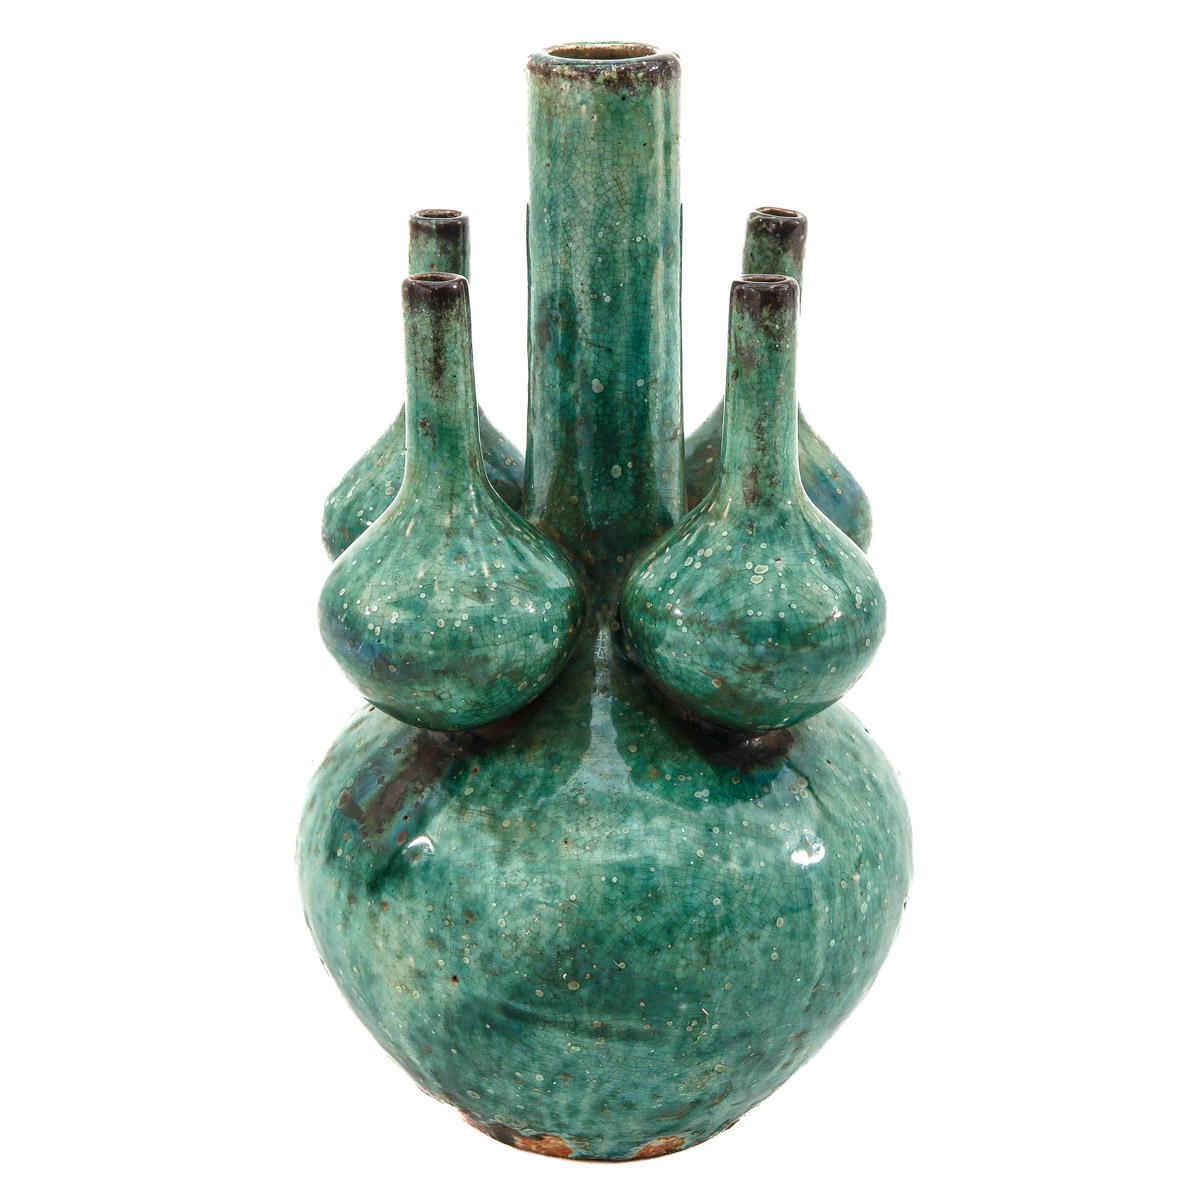 A Green Glaze Tulip Vase